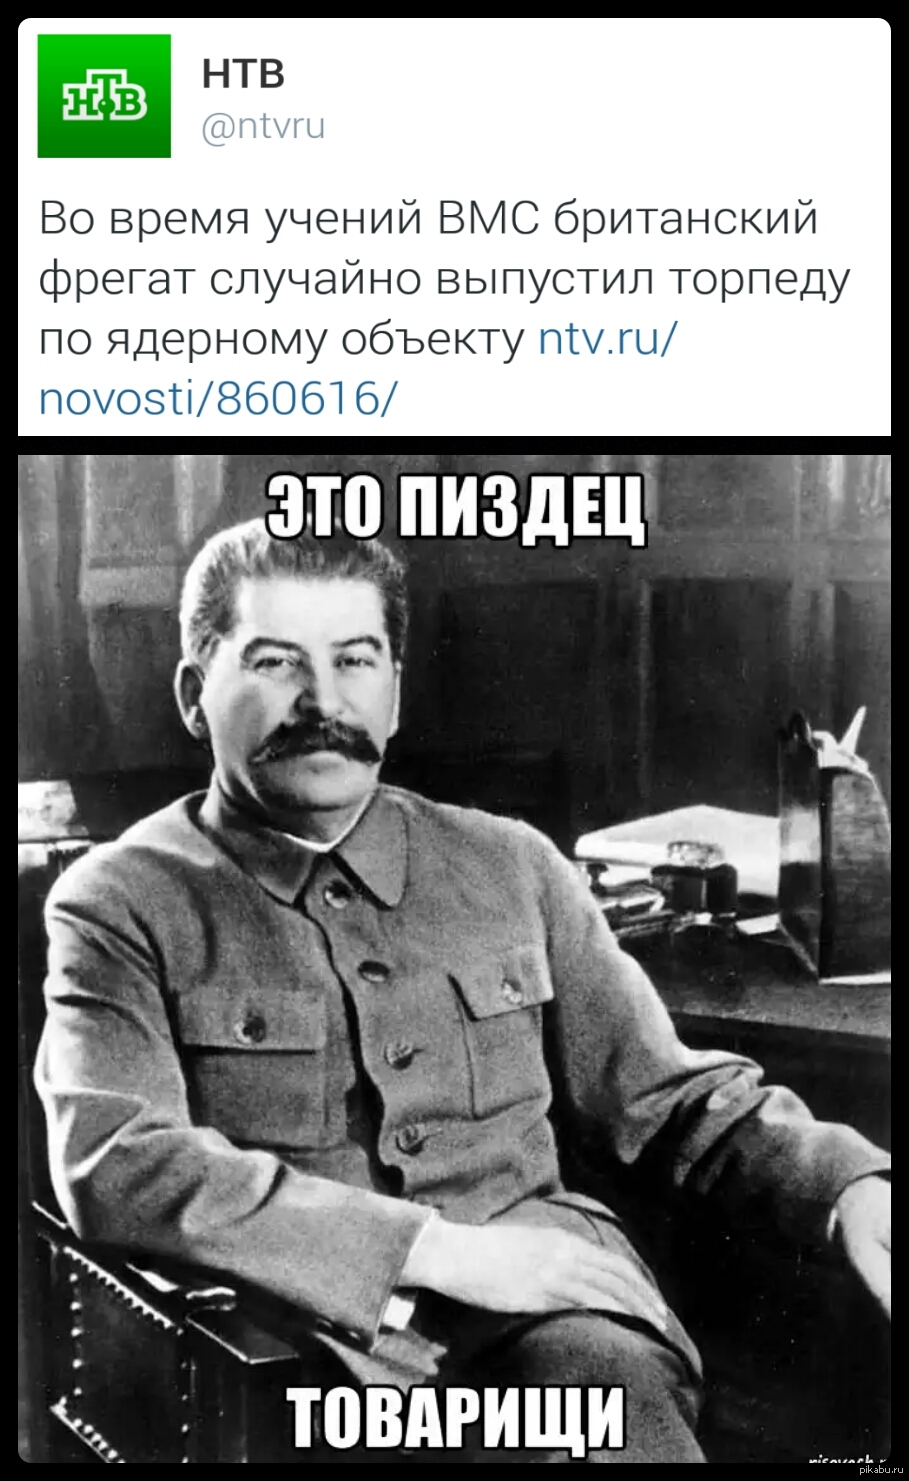 Анекдот Сталин Расстрелять